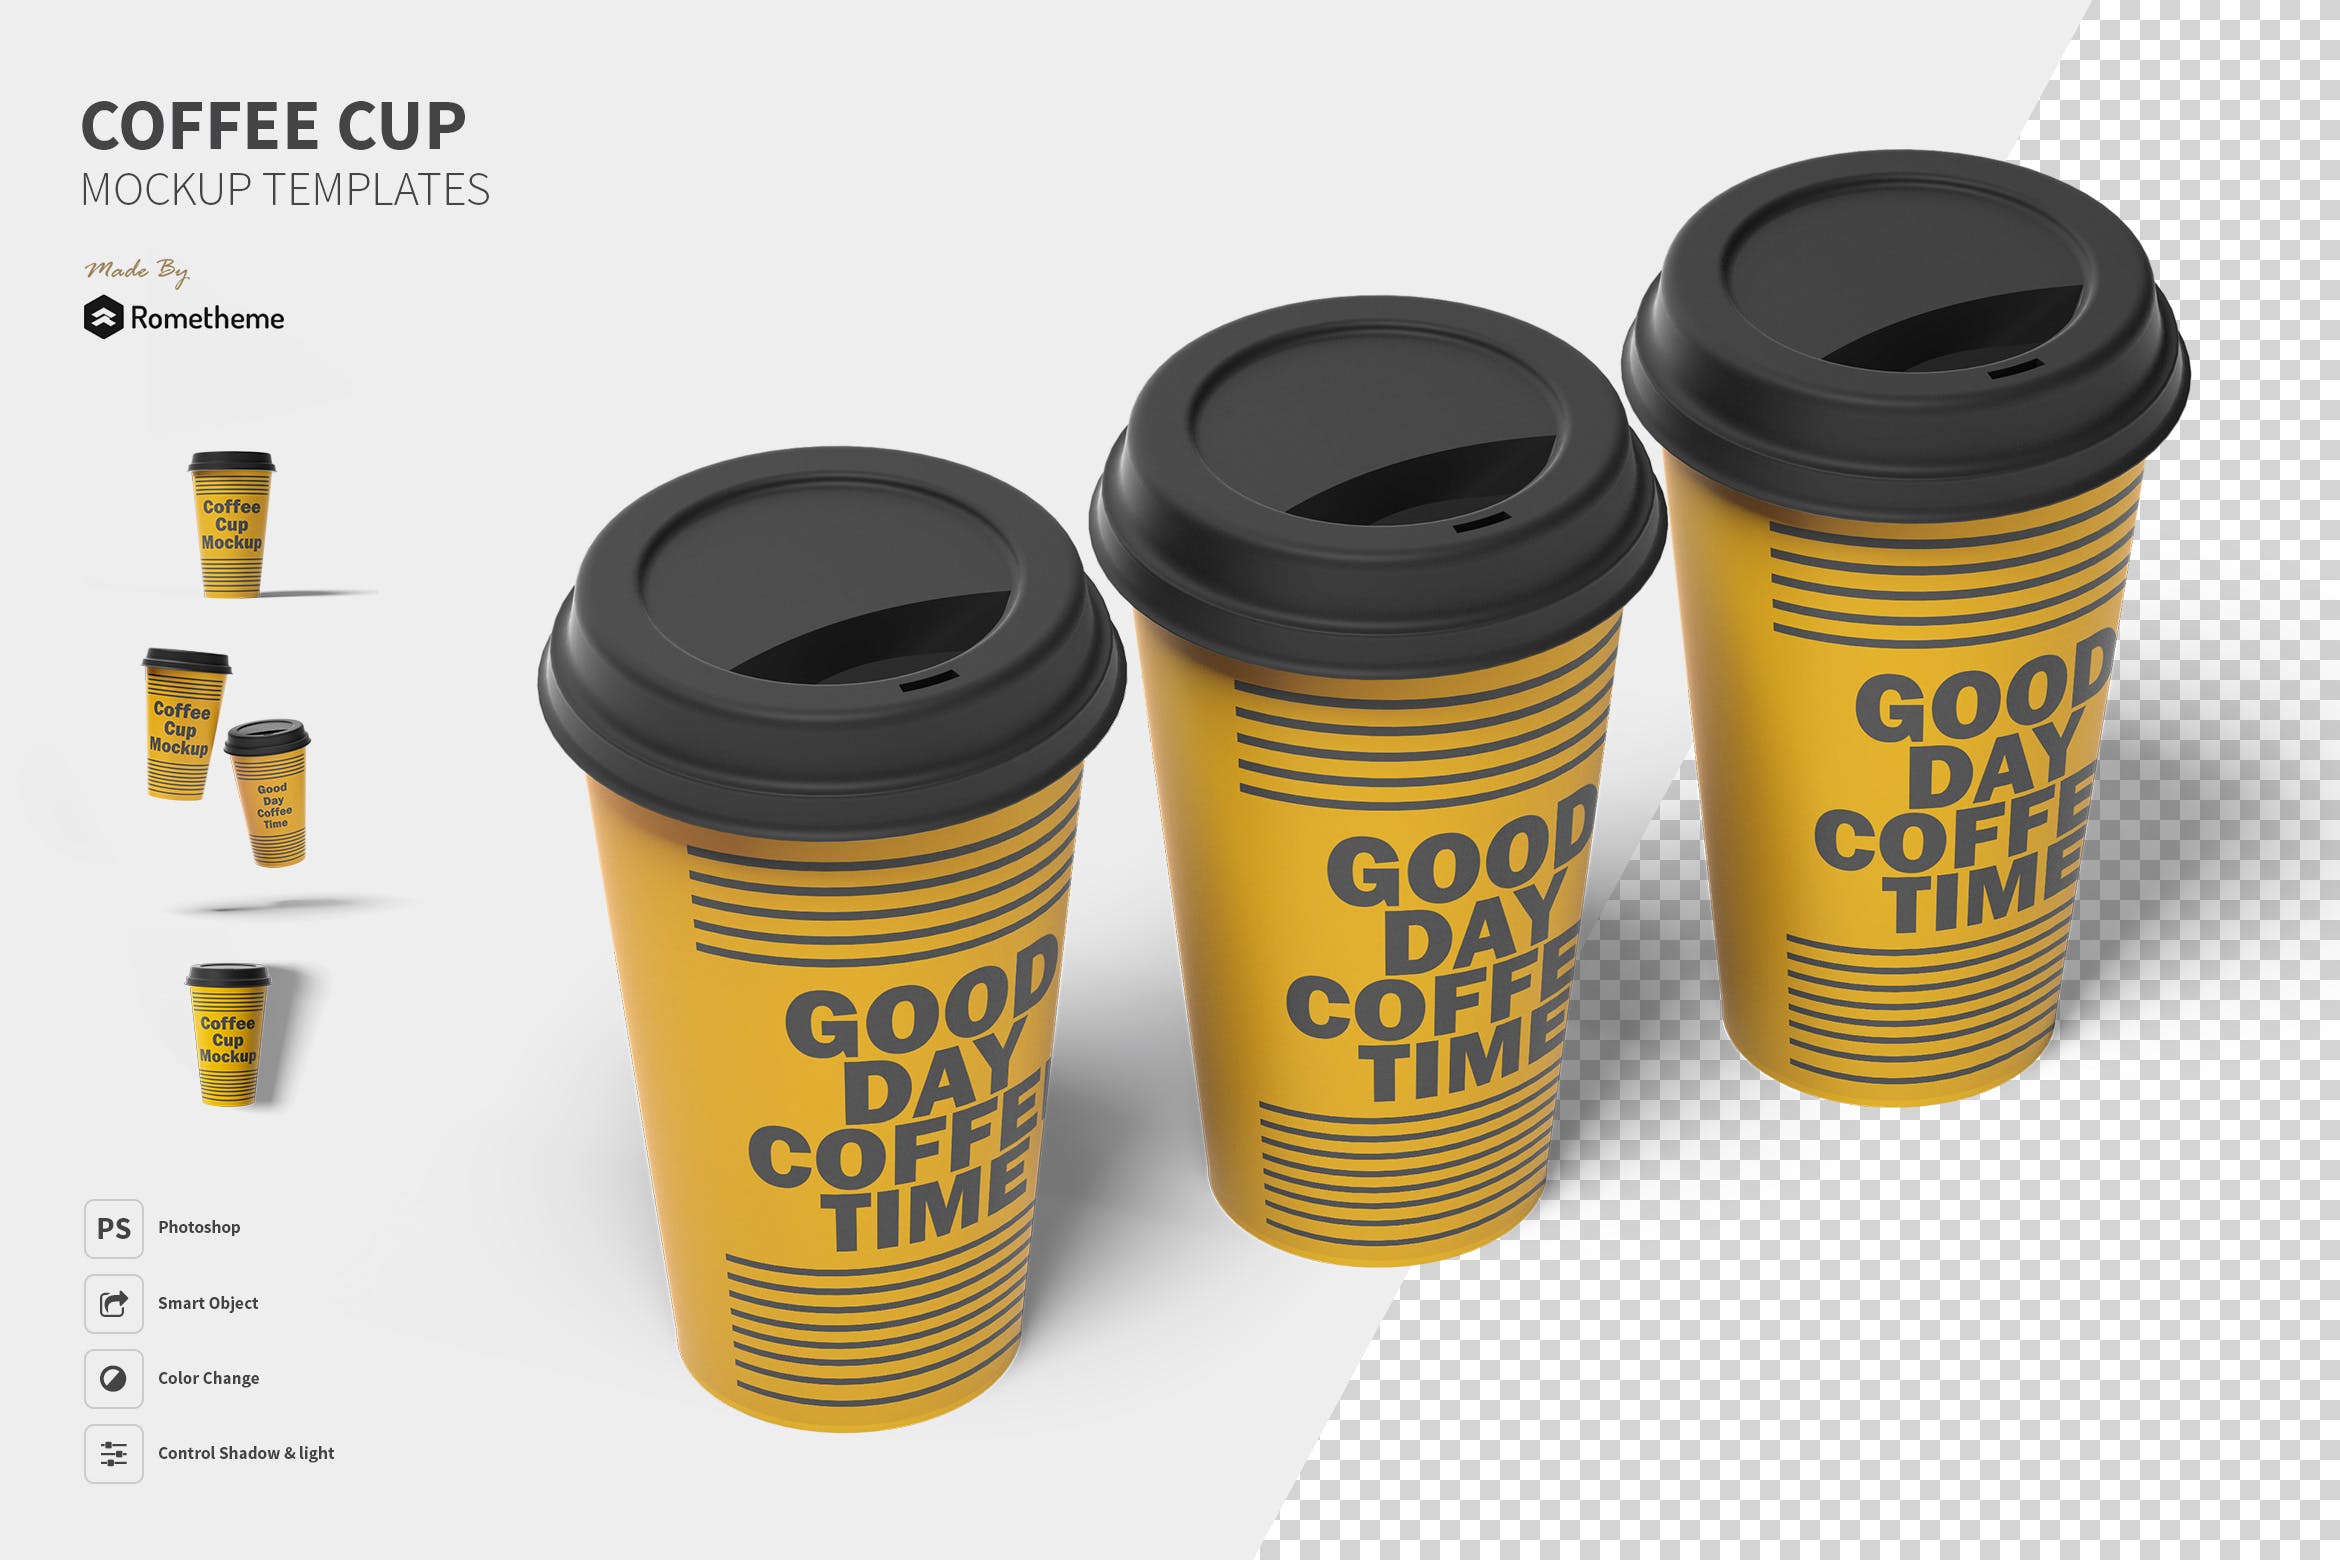 一次性咖啡纸杯设计图非凡图库精选 Coffee Cup Mockup Set FH插图